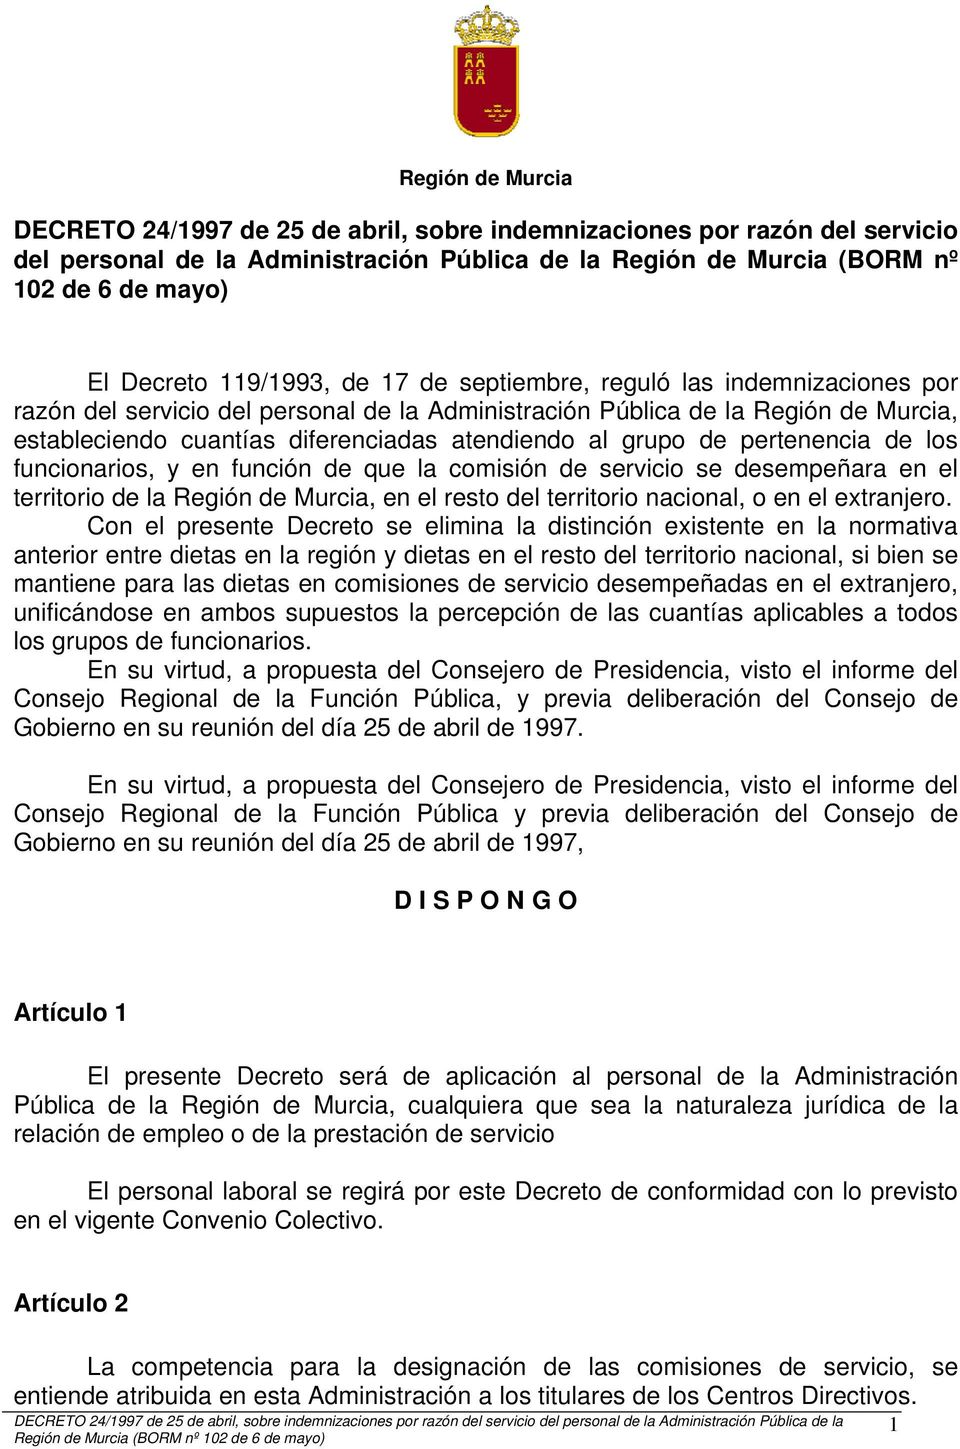 grupo de pertenencia de los funcionarios, y en función de que la comisión de servicio se desempeñara en el territorio de la Región de Murcia, en el resto del territorio nacional, o en el extranjero.